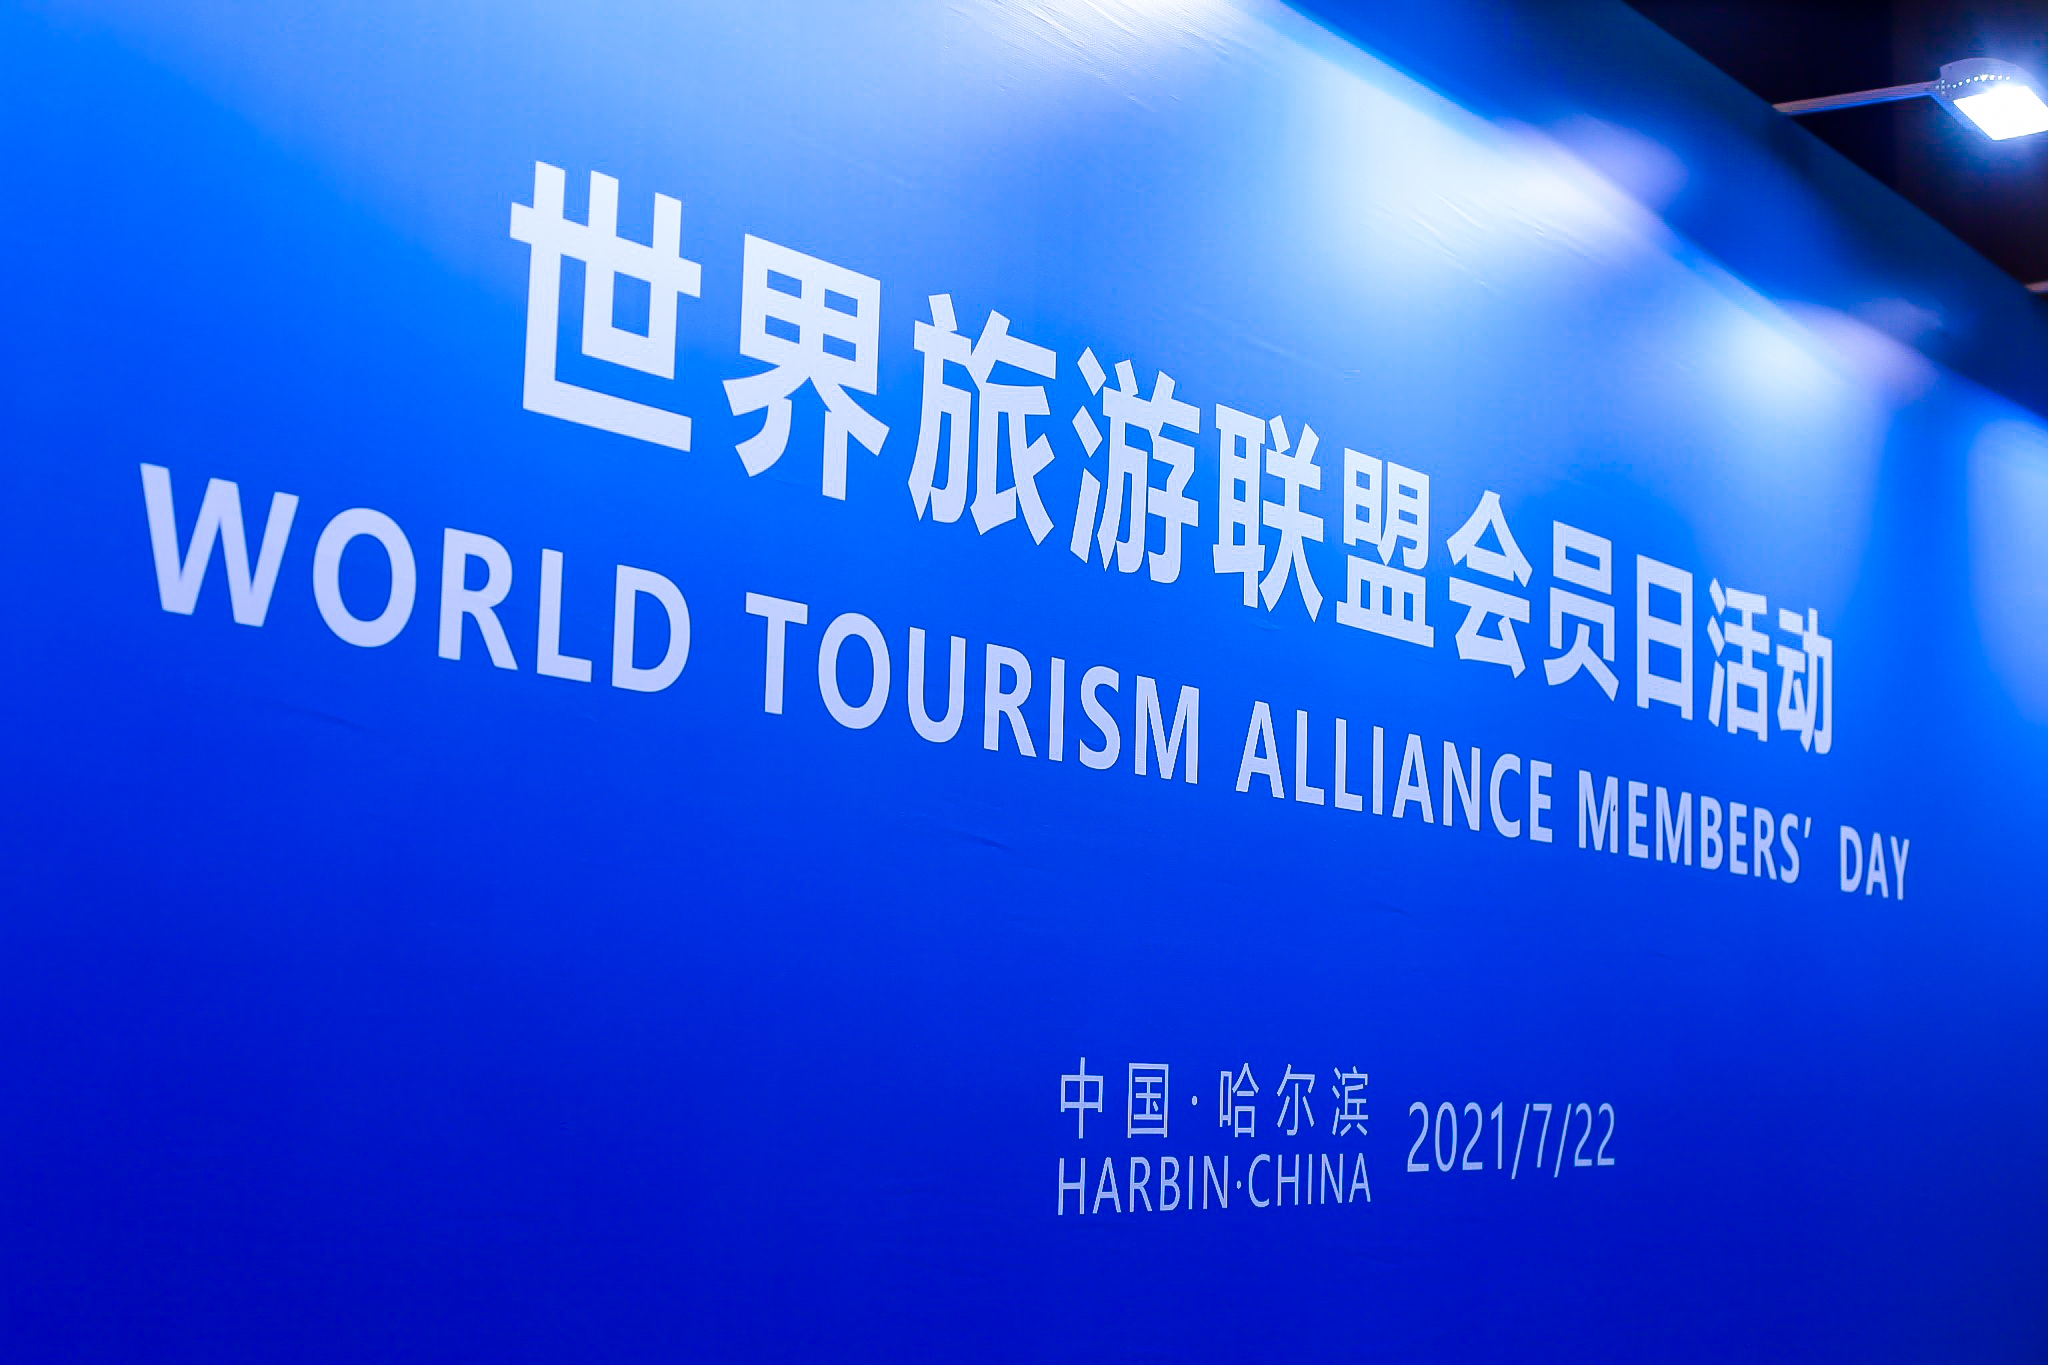 WTA member day issue 1 of 2021, Harbin, China